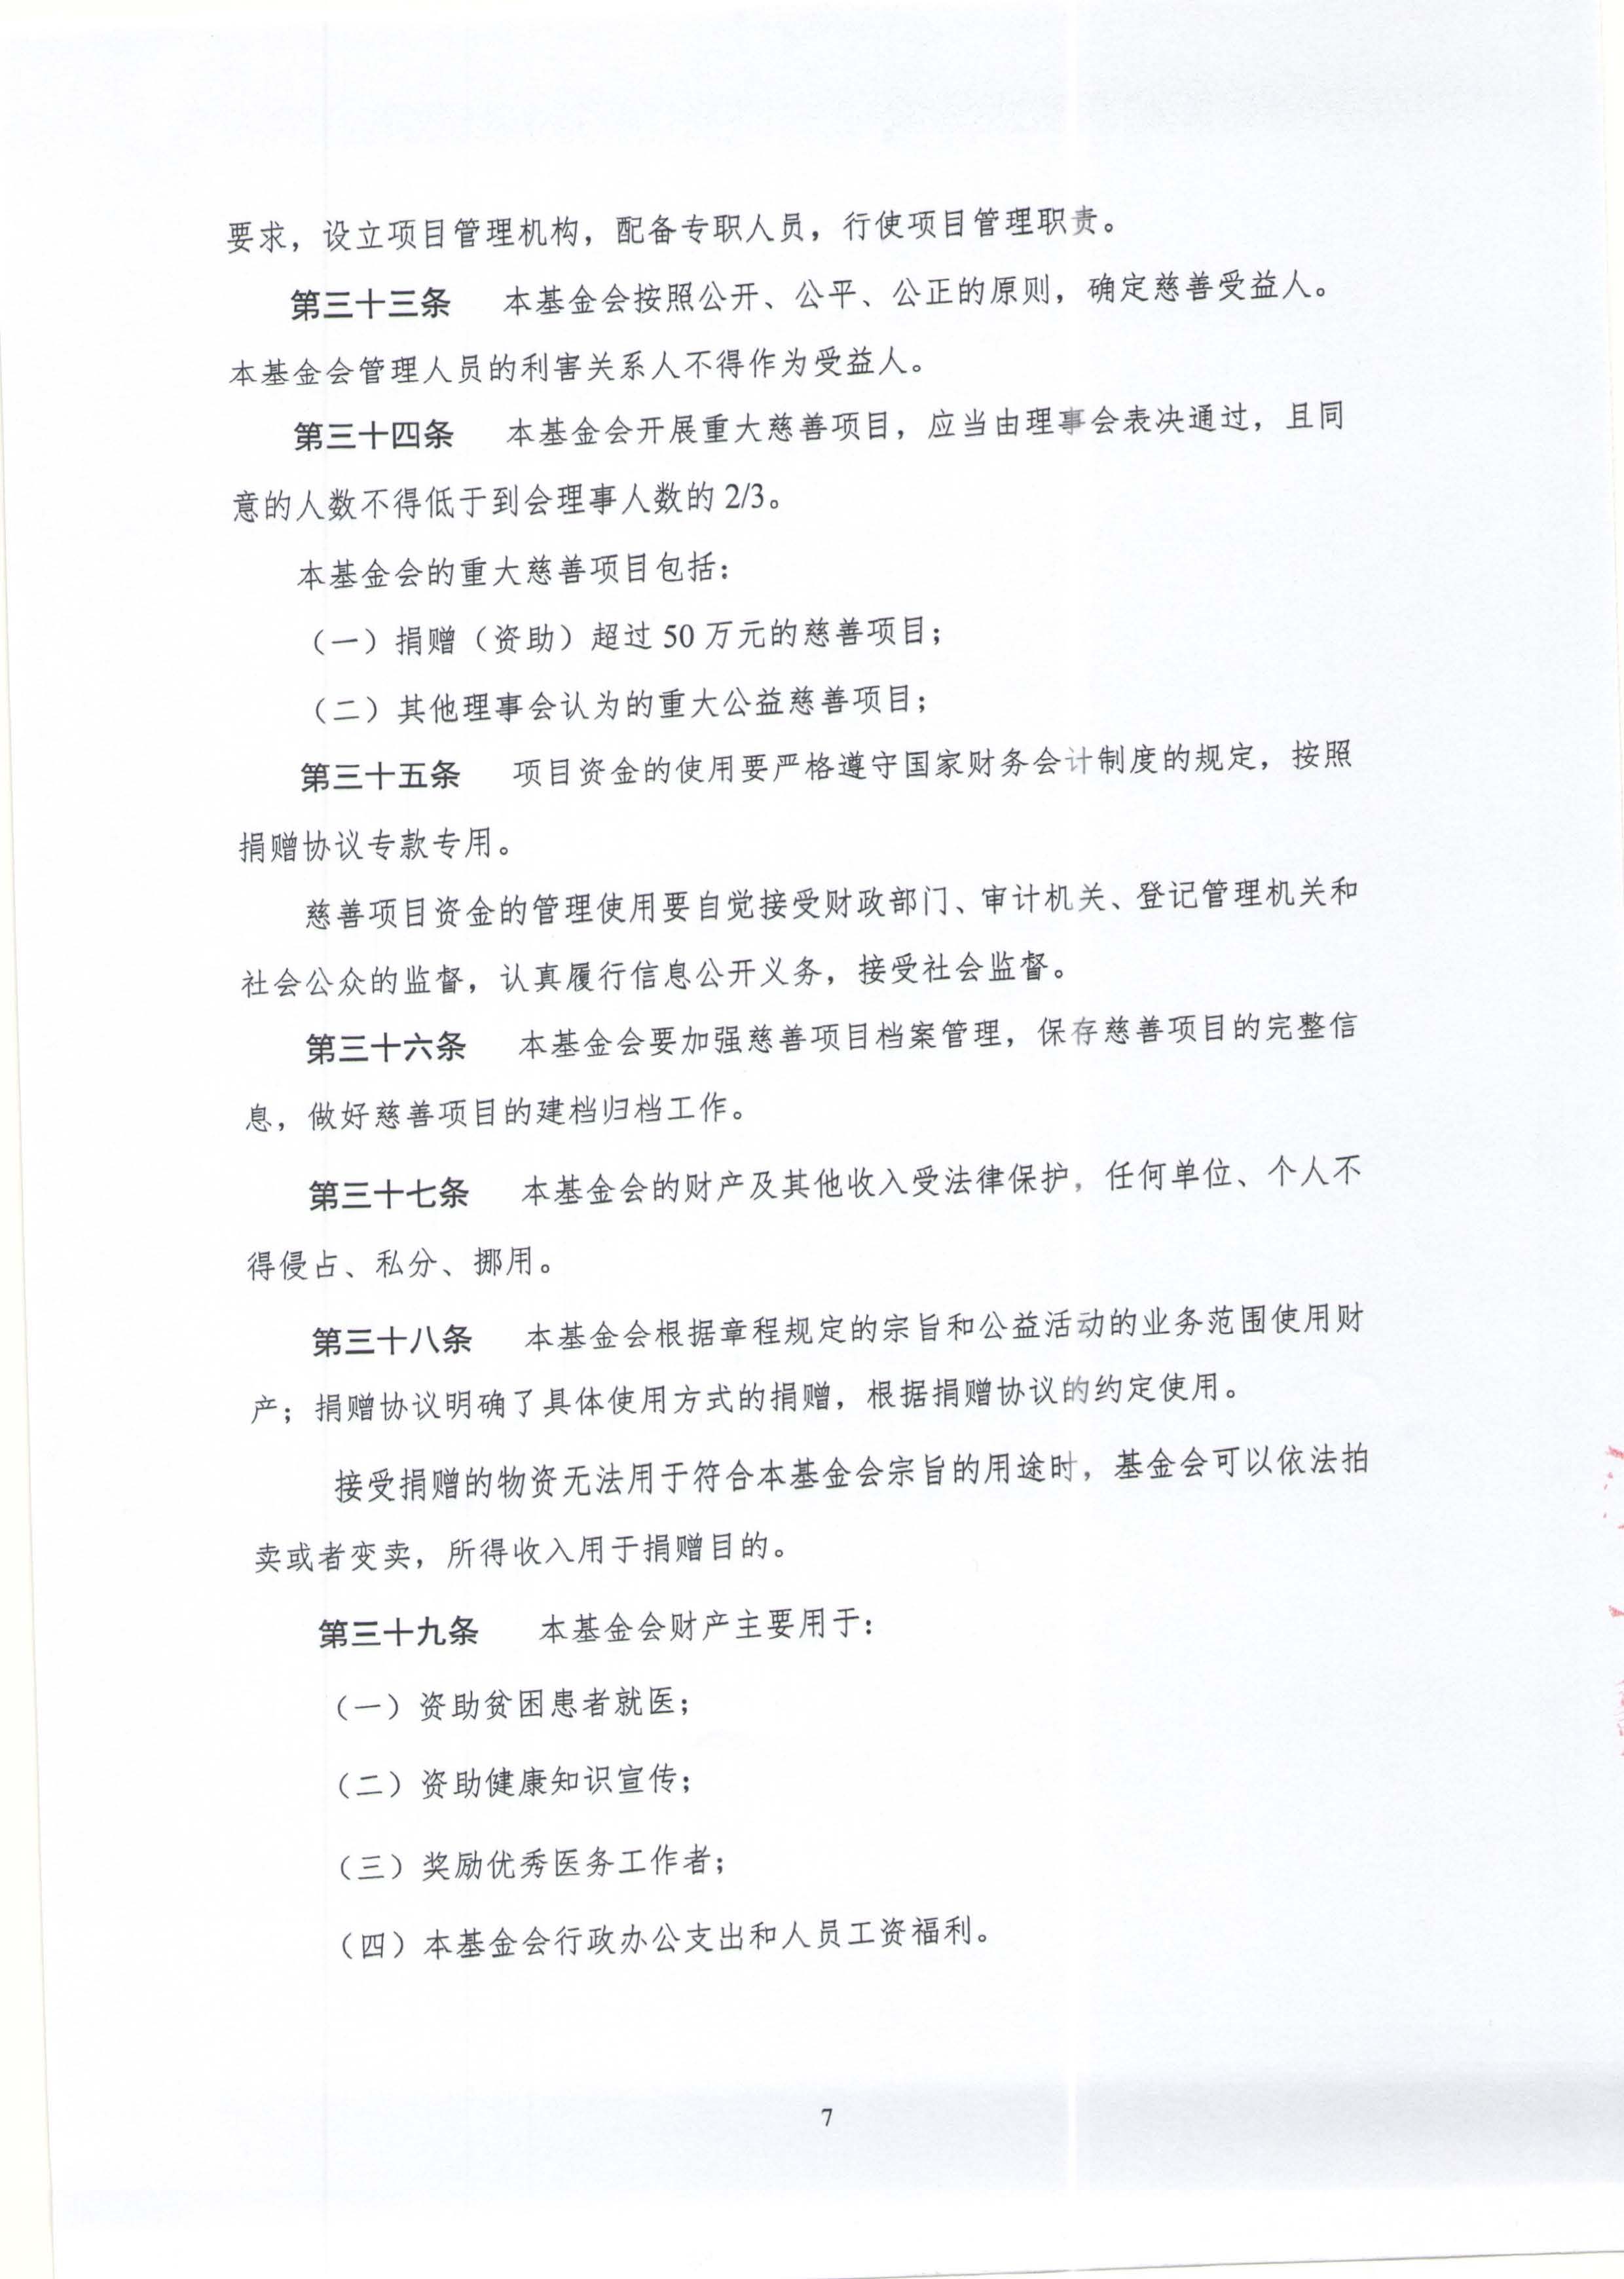 章程-北京鼎医公益基金会_页面_07